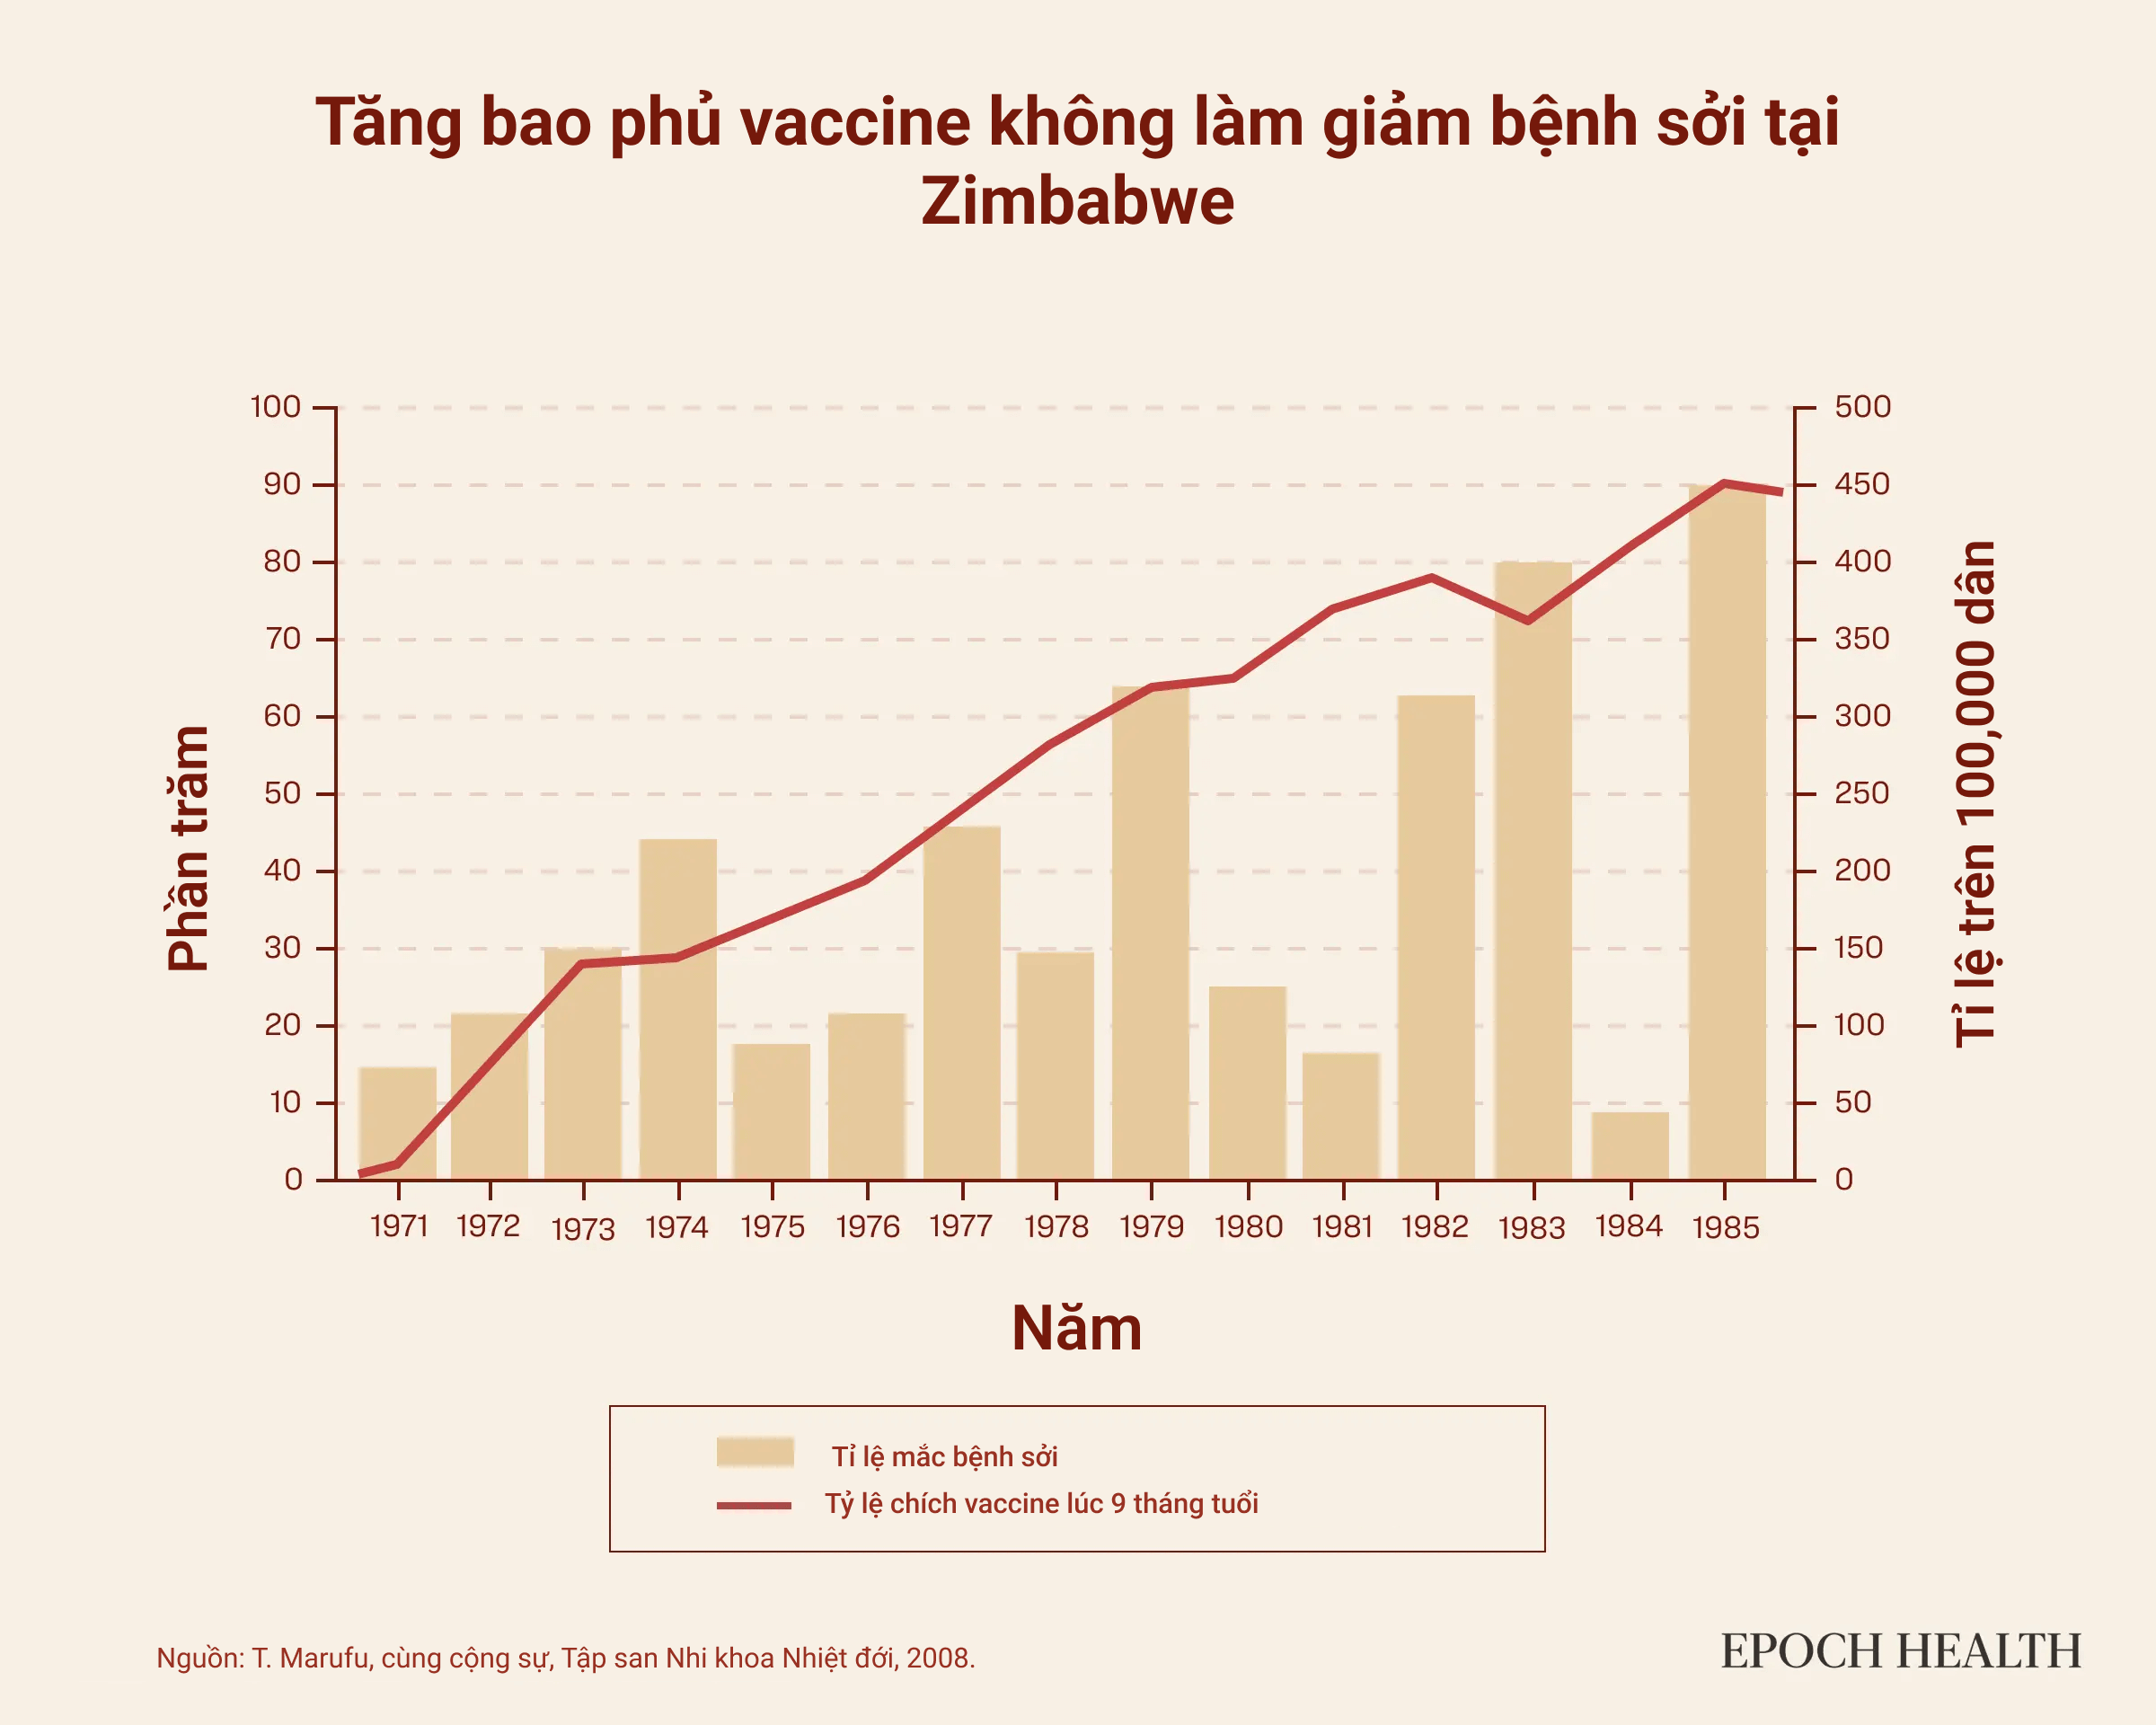 Trong đợt bùng phát bệnh sởi ở Zimbabwe từ năm 1967 đến năm 1989, việc tăng cường chích ngừa vaccine sởi không những không làm giảm tỷ lệ tử vong mà còn dẫn đến tỷ lệ mắc sởi cao hơn. (Ảnh:The Epoch Times)